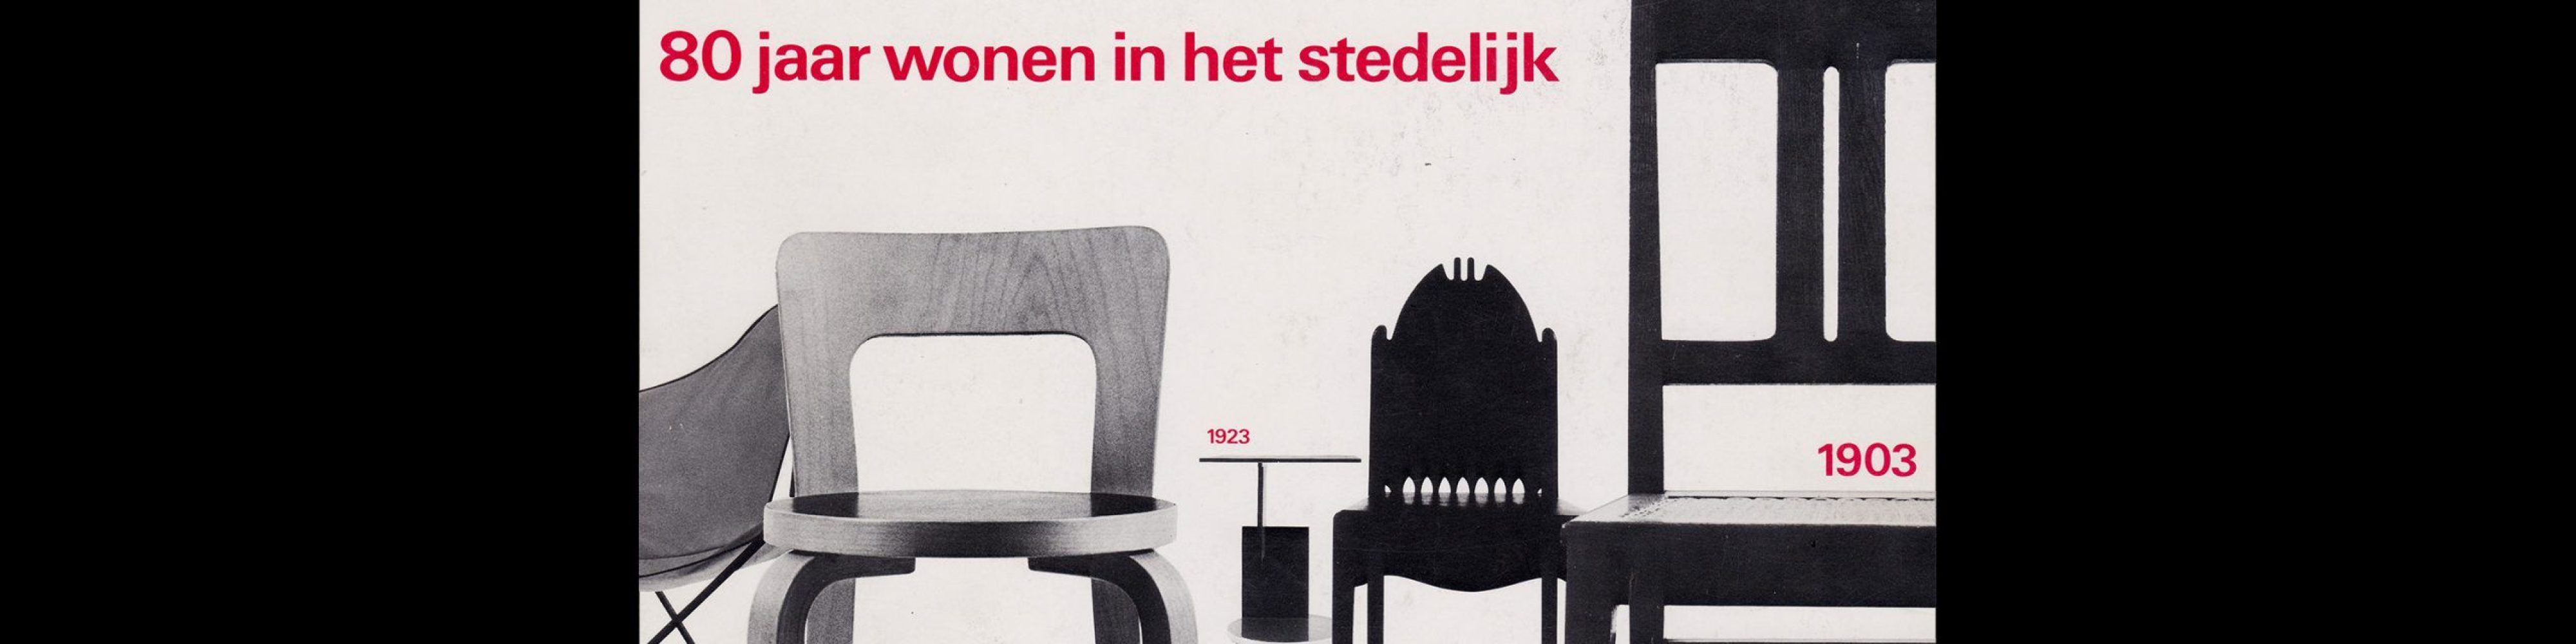 80 jaar Wohnen in het Stedelijk, Stedelijk Museum, Amsterdam, 1981 designed by Wim Crouwel and Arlette Brouwers(Total Design)